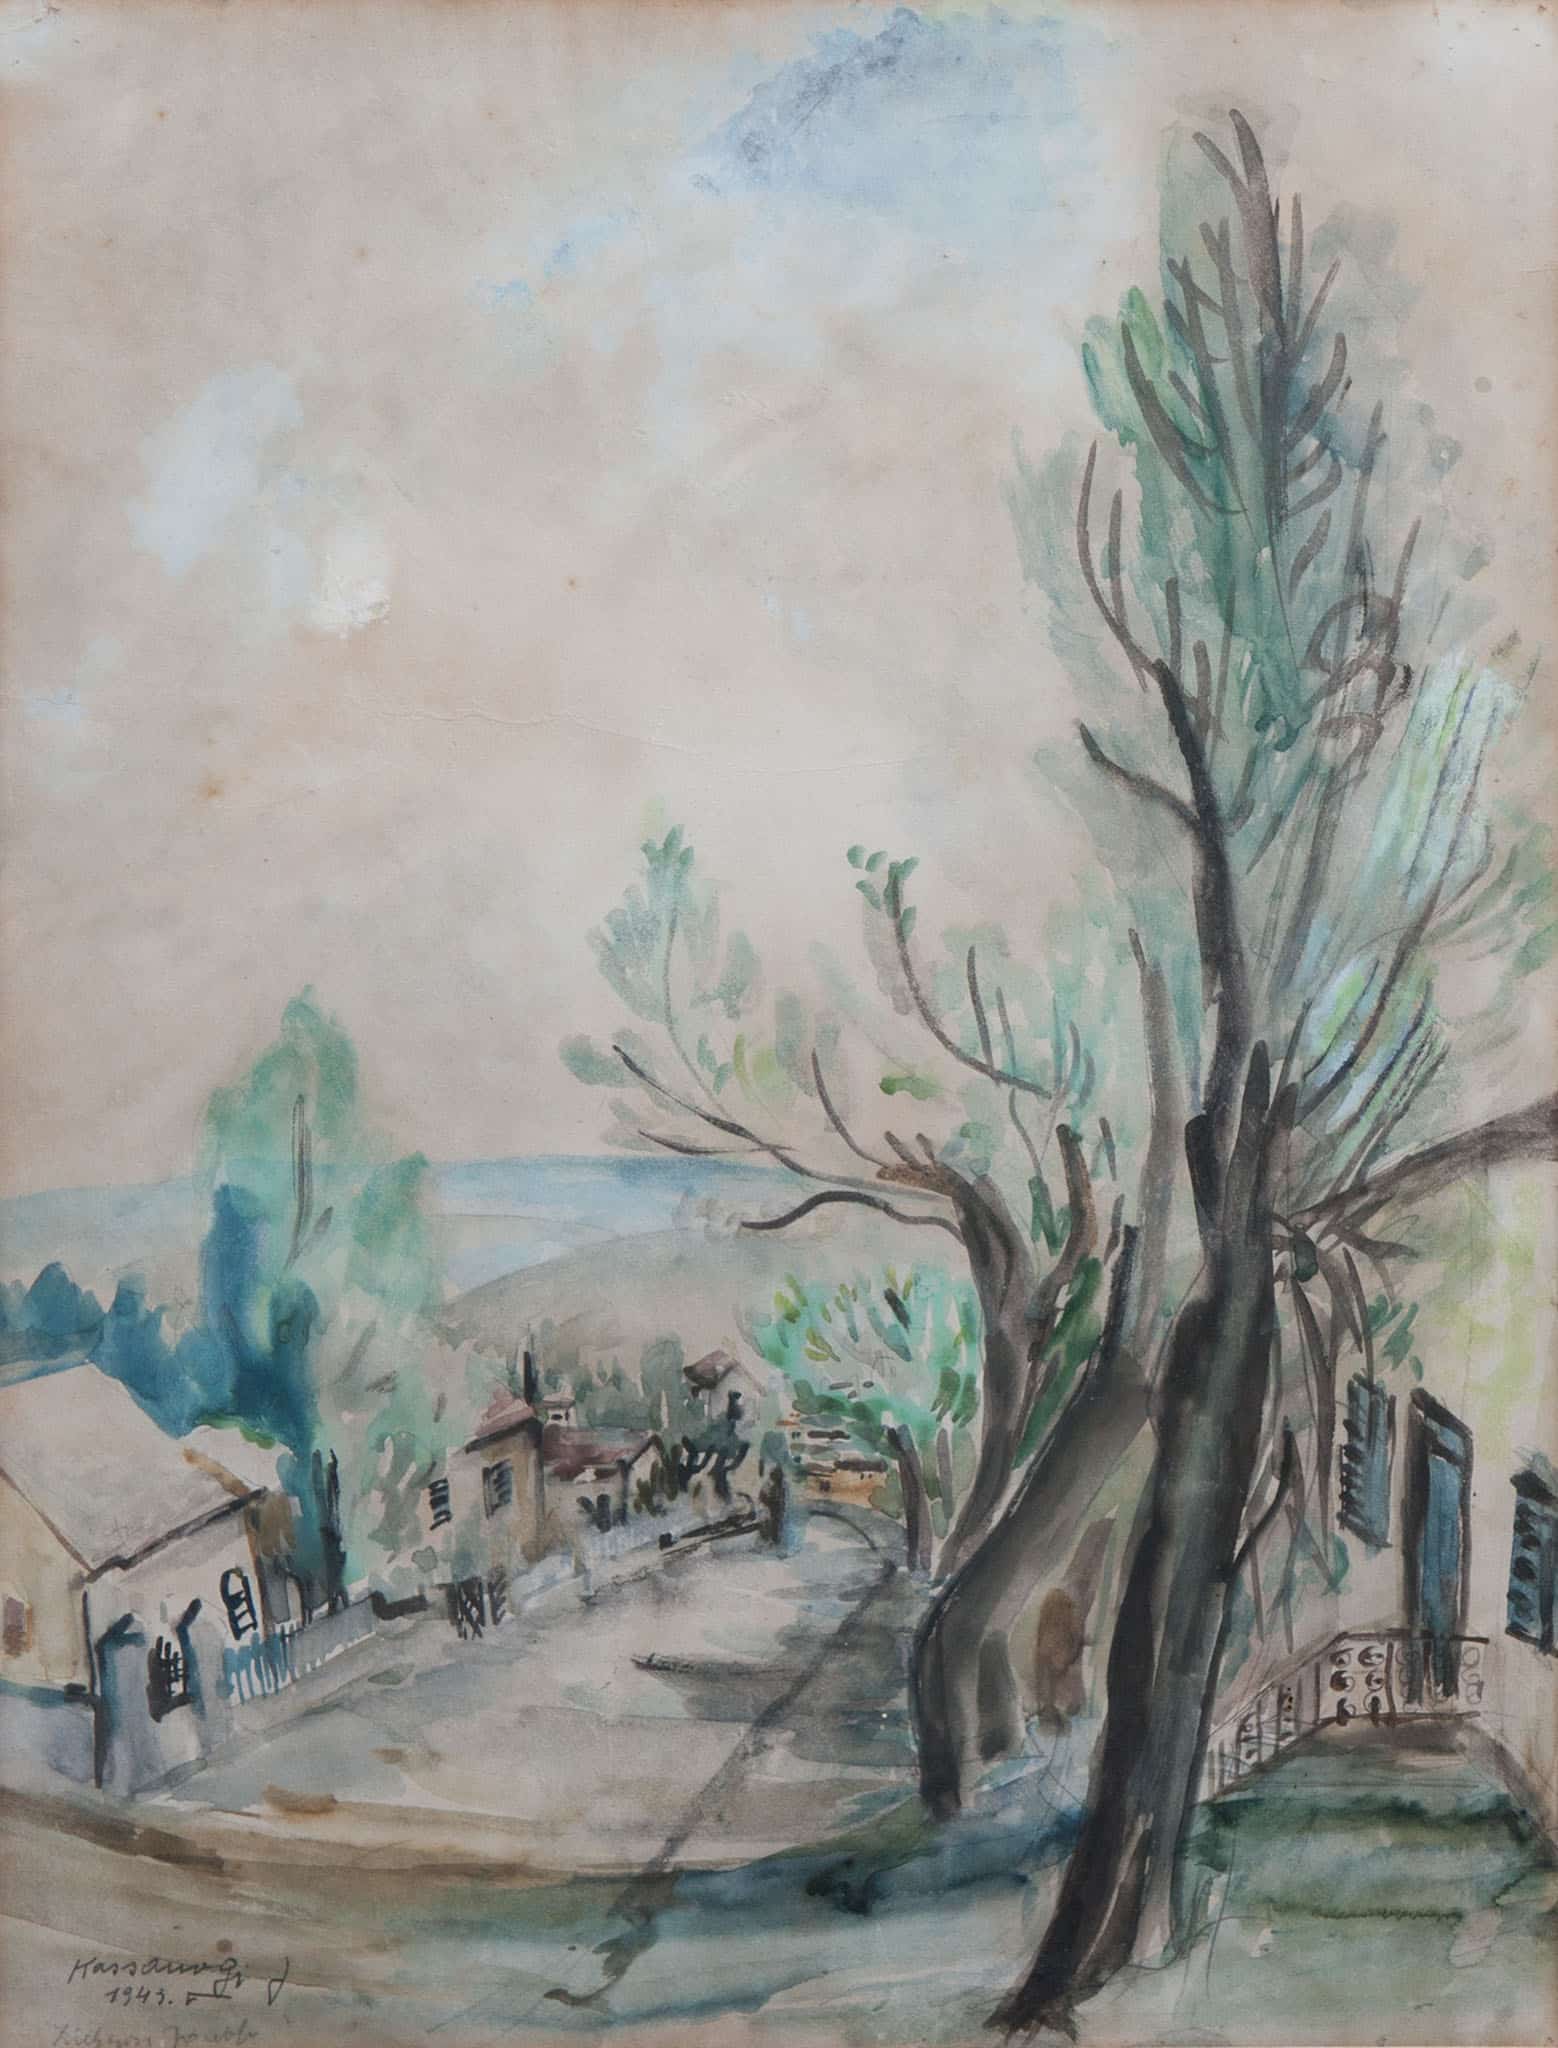 יוסף קוסונוגי, "זכרון יעקב", 1943, אקוורל על נייר, 50x34 ס"מ